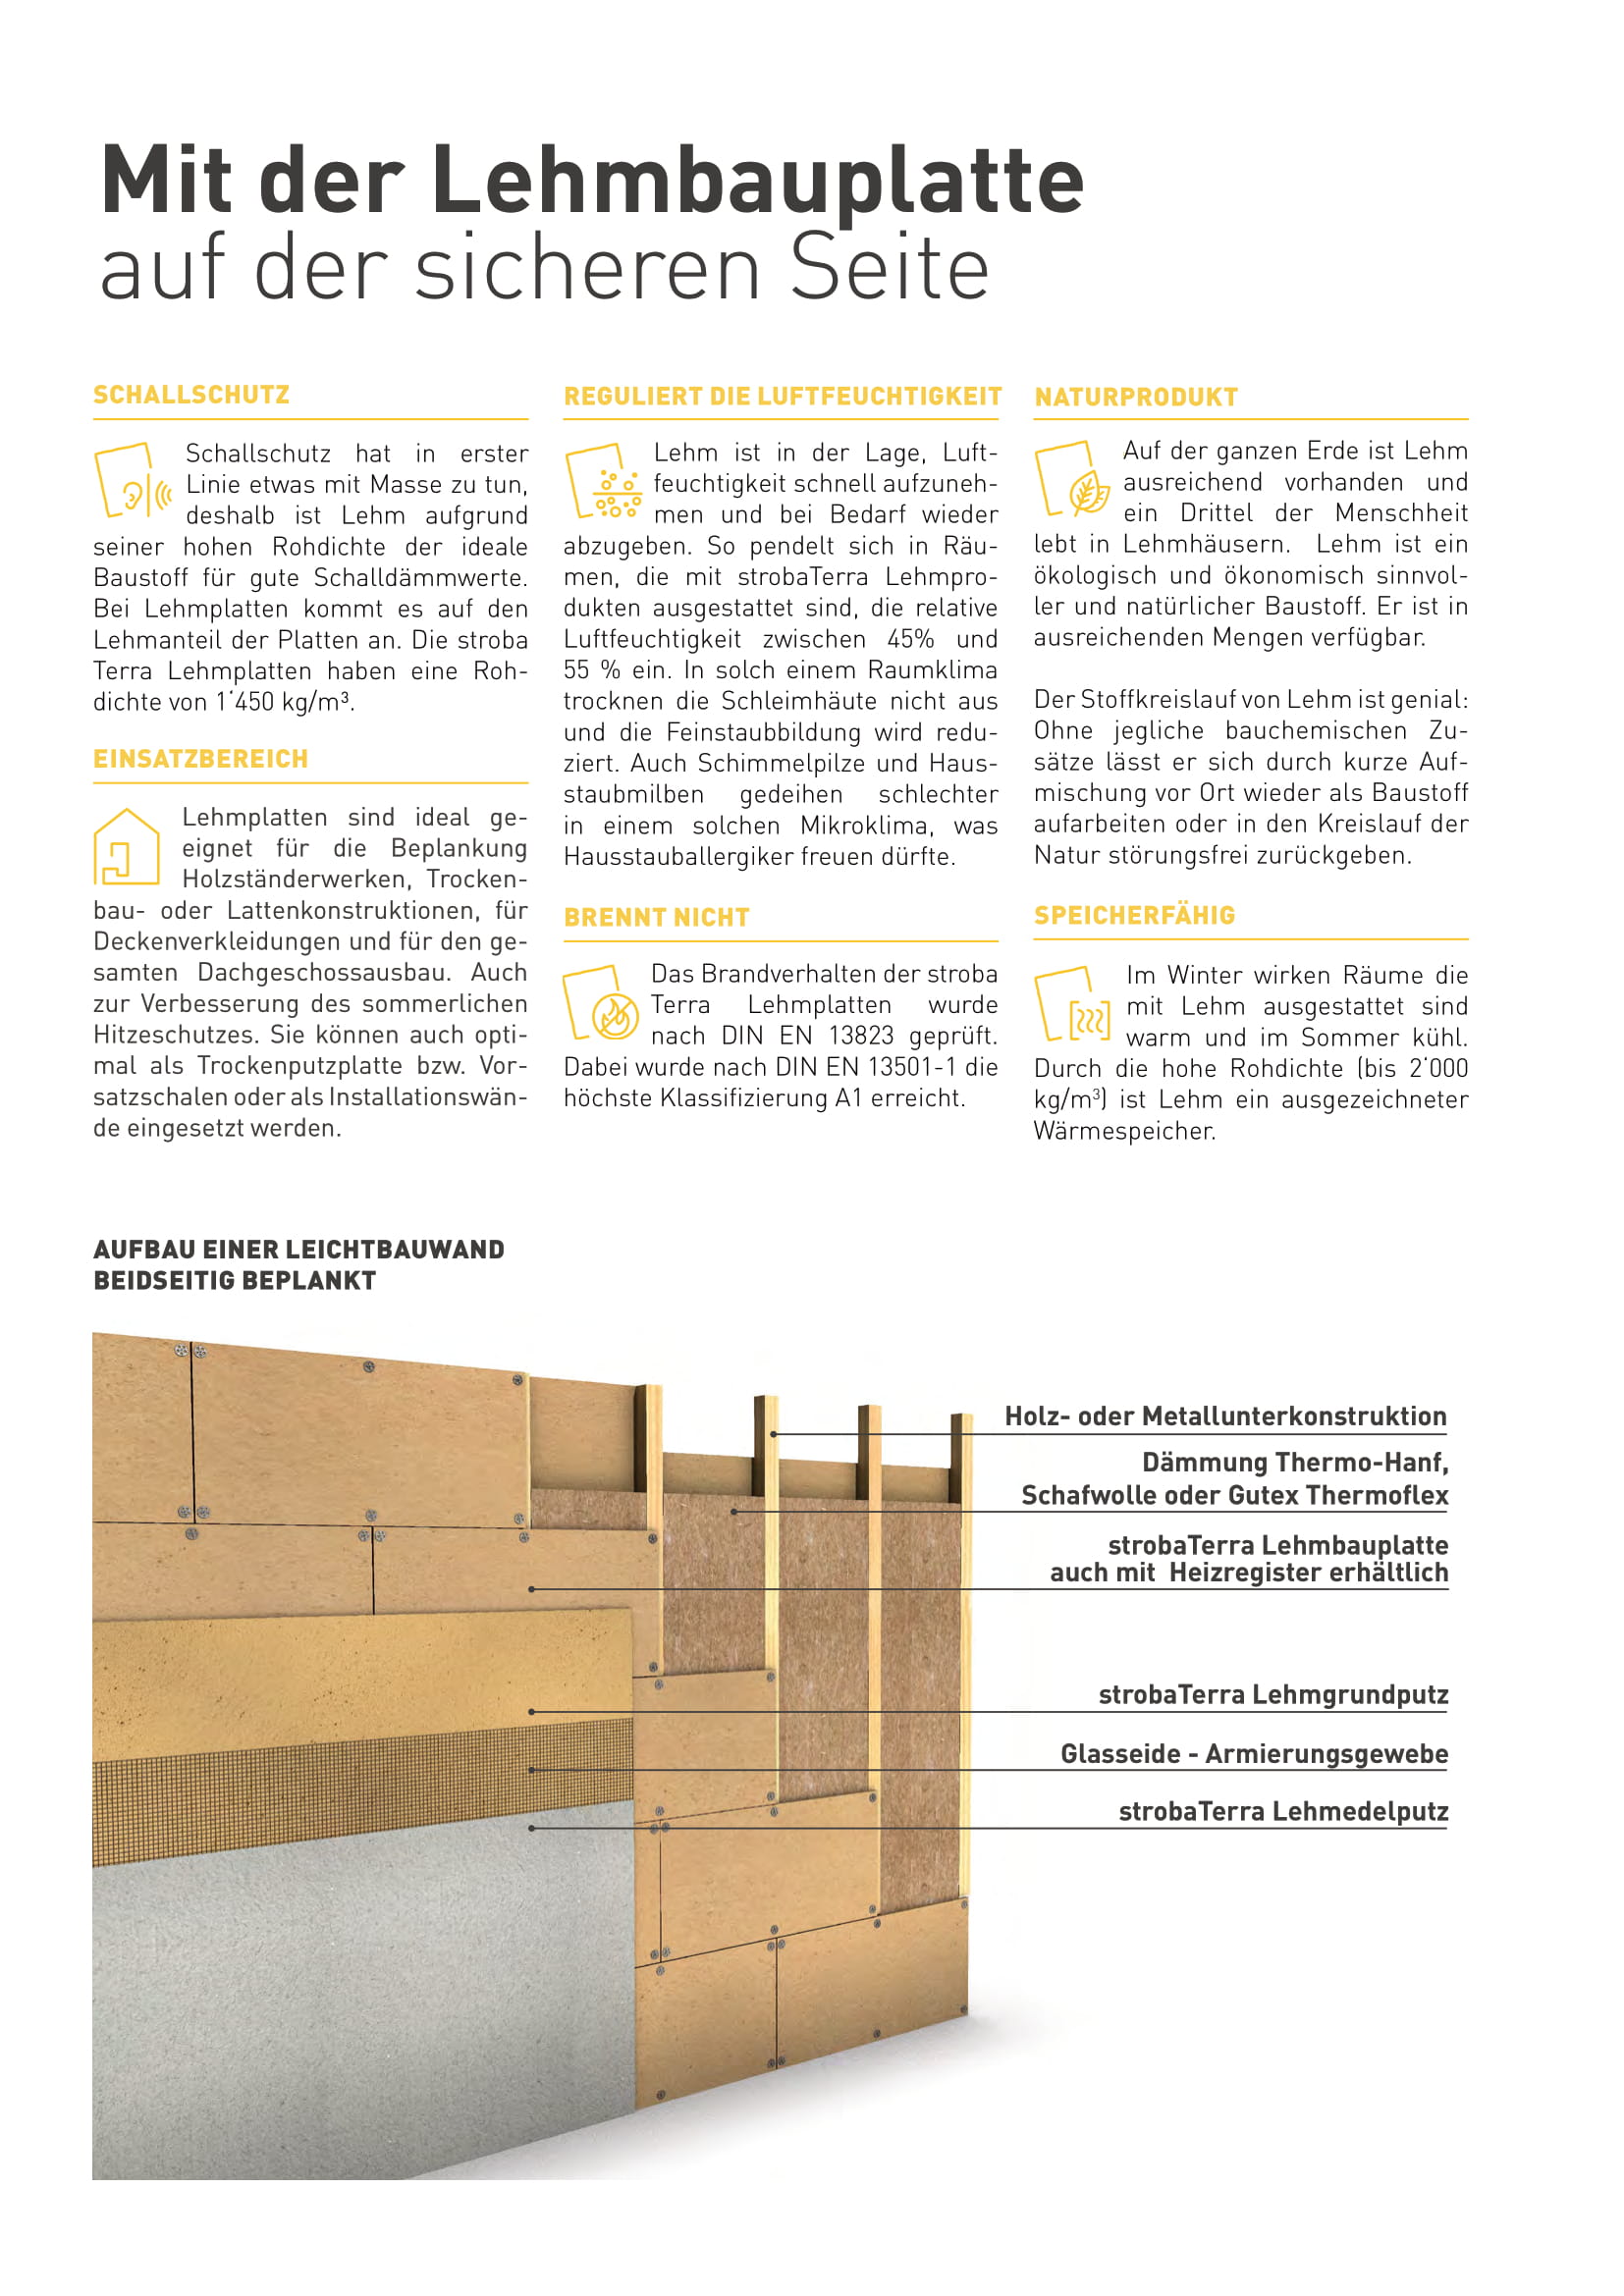 Lehmbauplatte Architekten Mailing und Nutzung als Broschüre -2